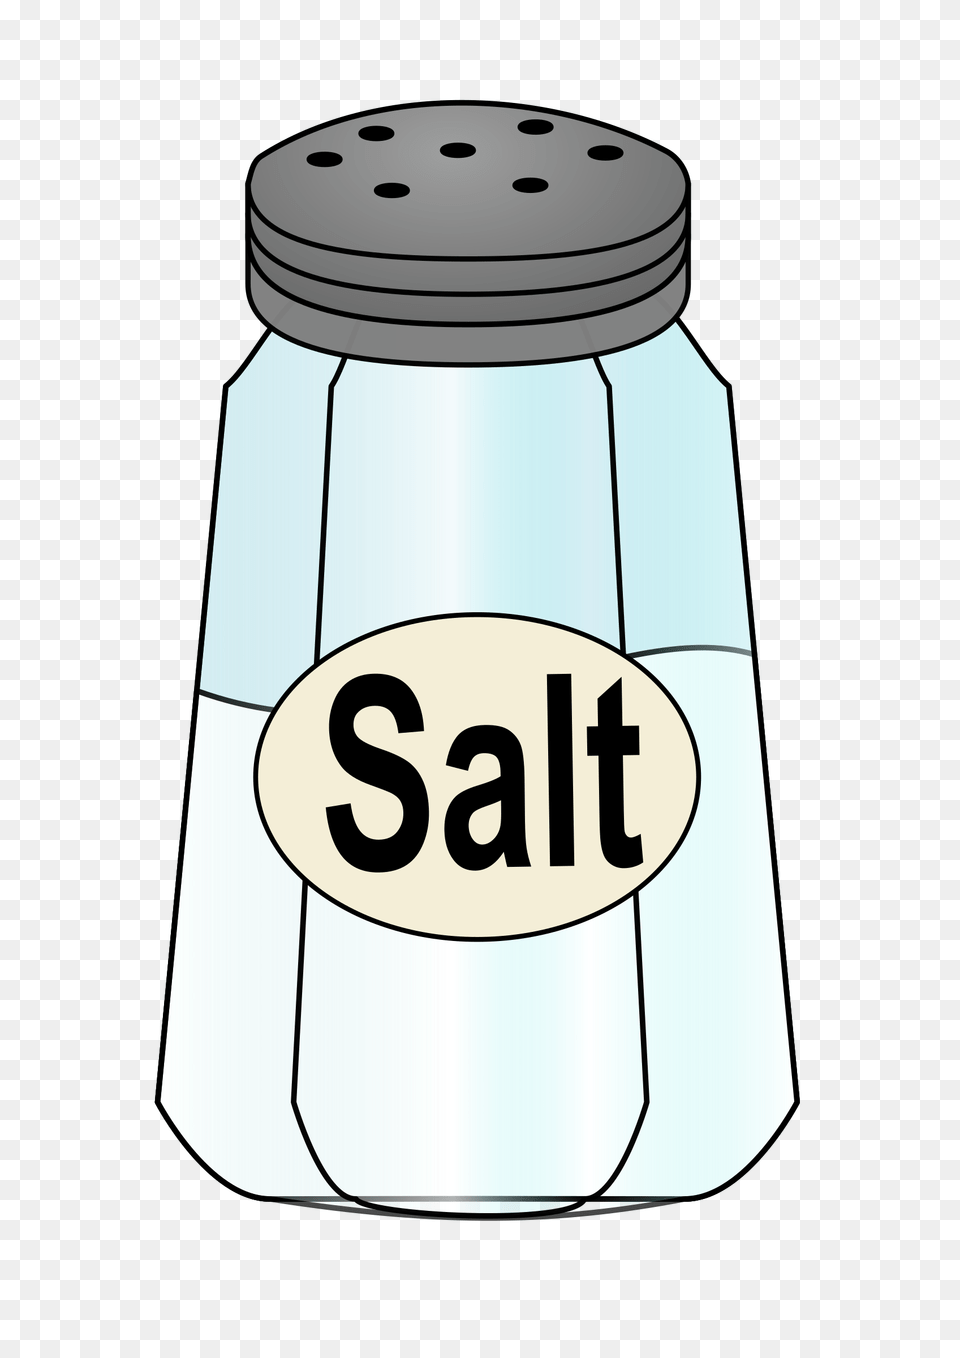 Salt Shaker Icons, Jar, Bottle Png